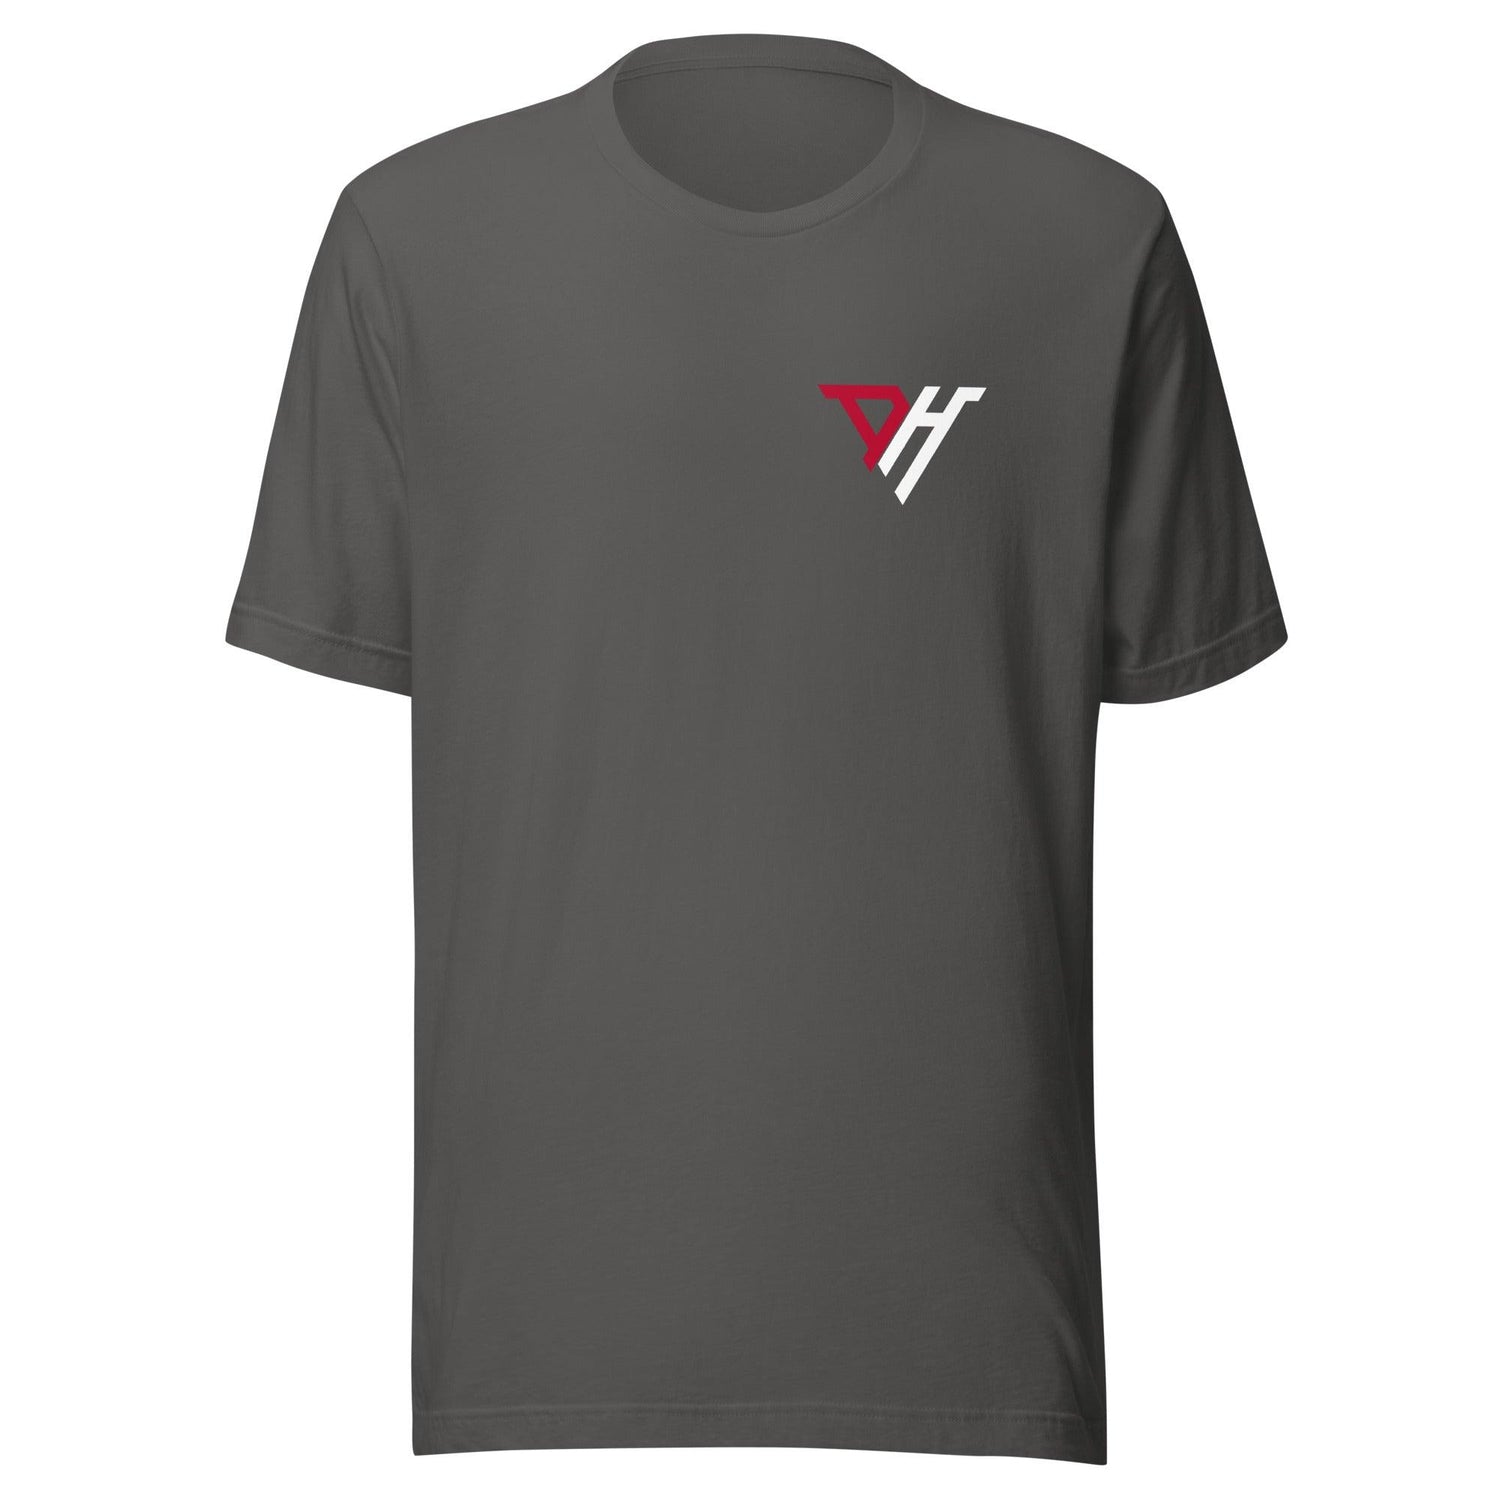 Destin Howard "Essential" t-shirt - Fan Arch